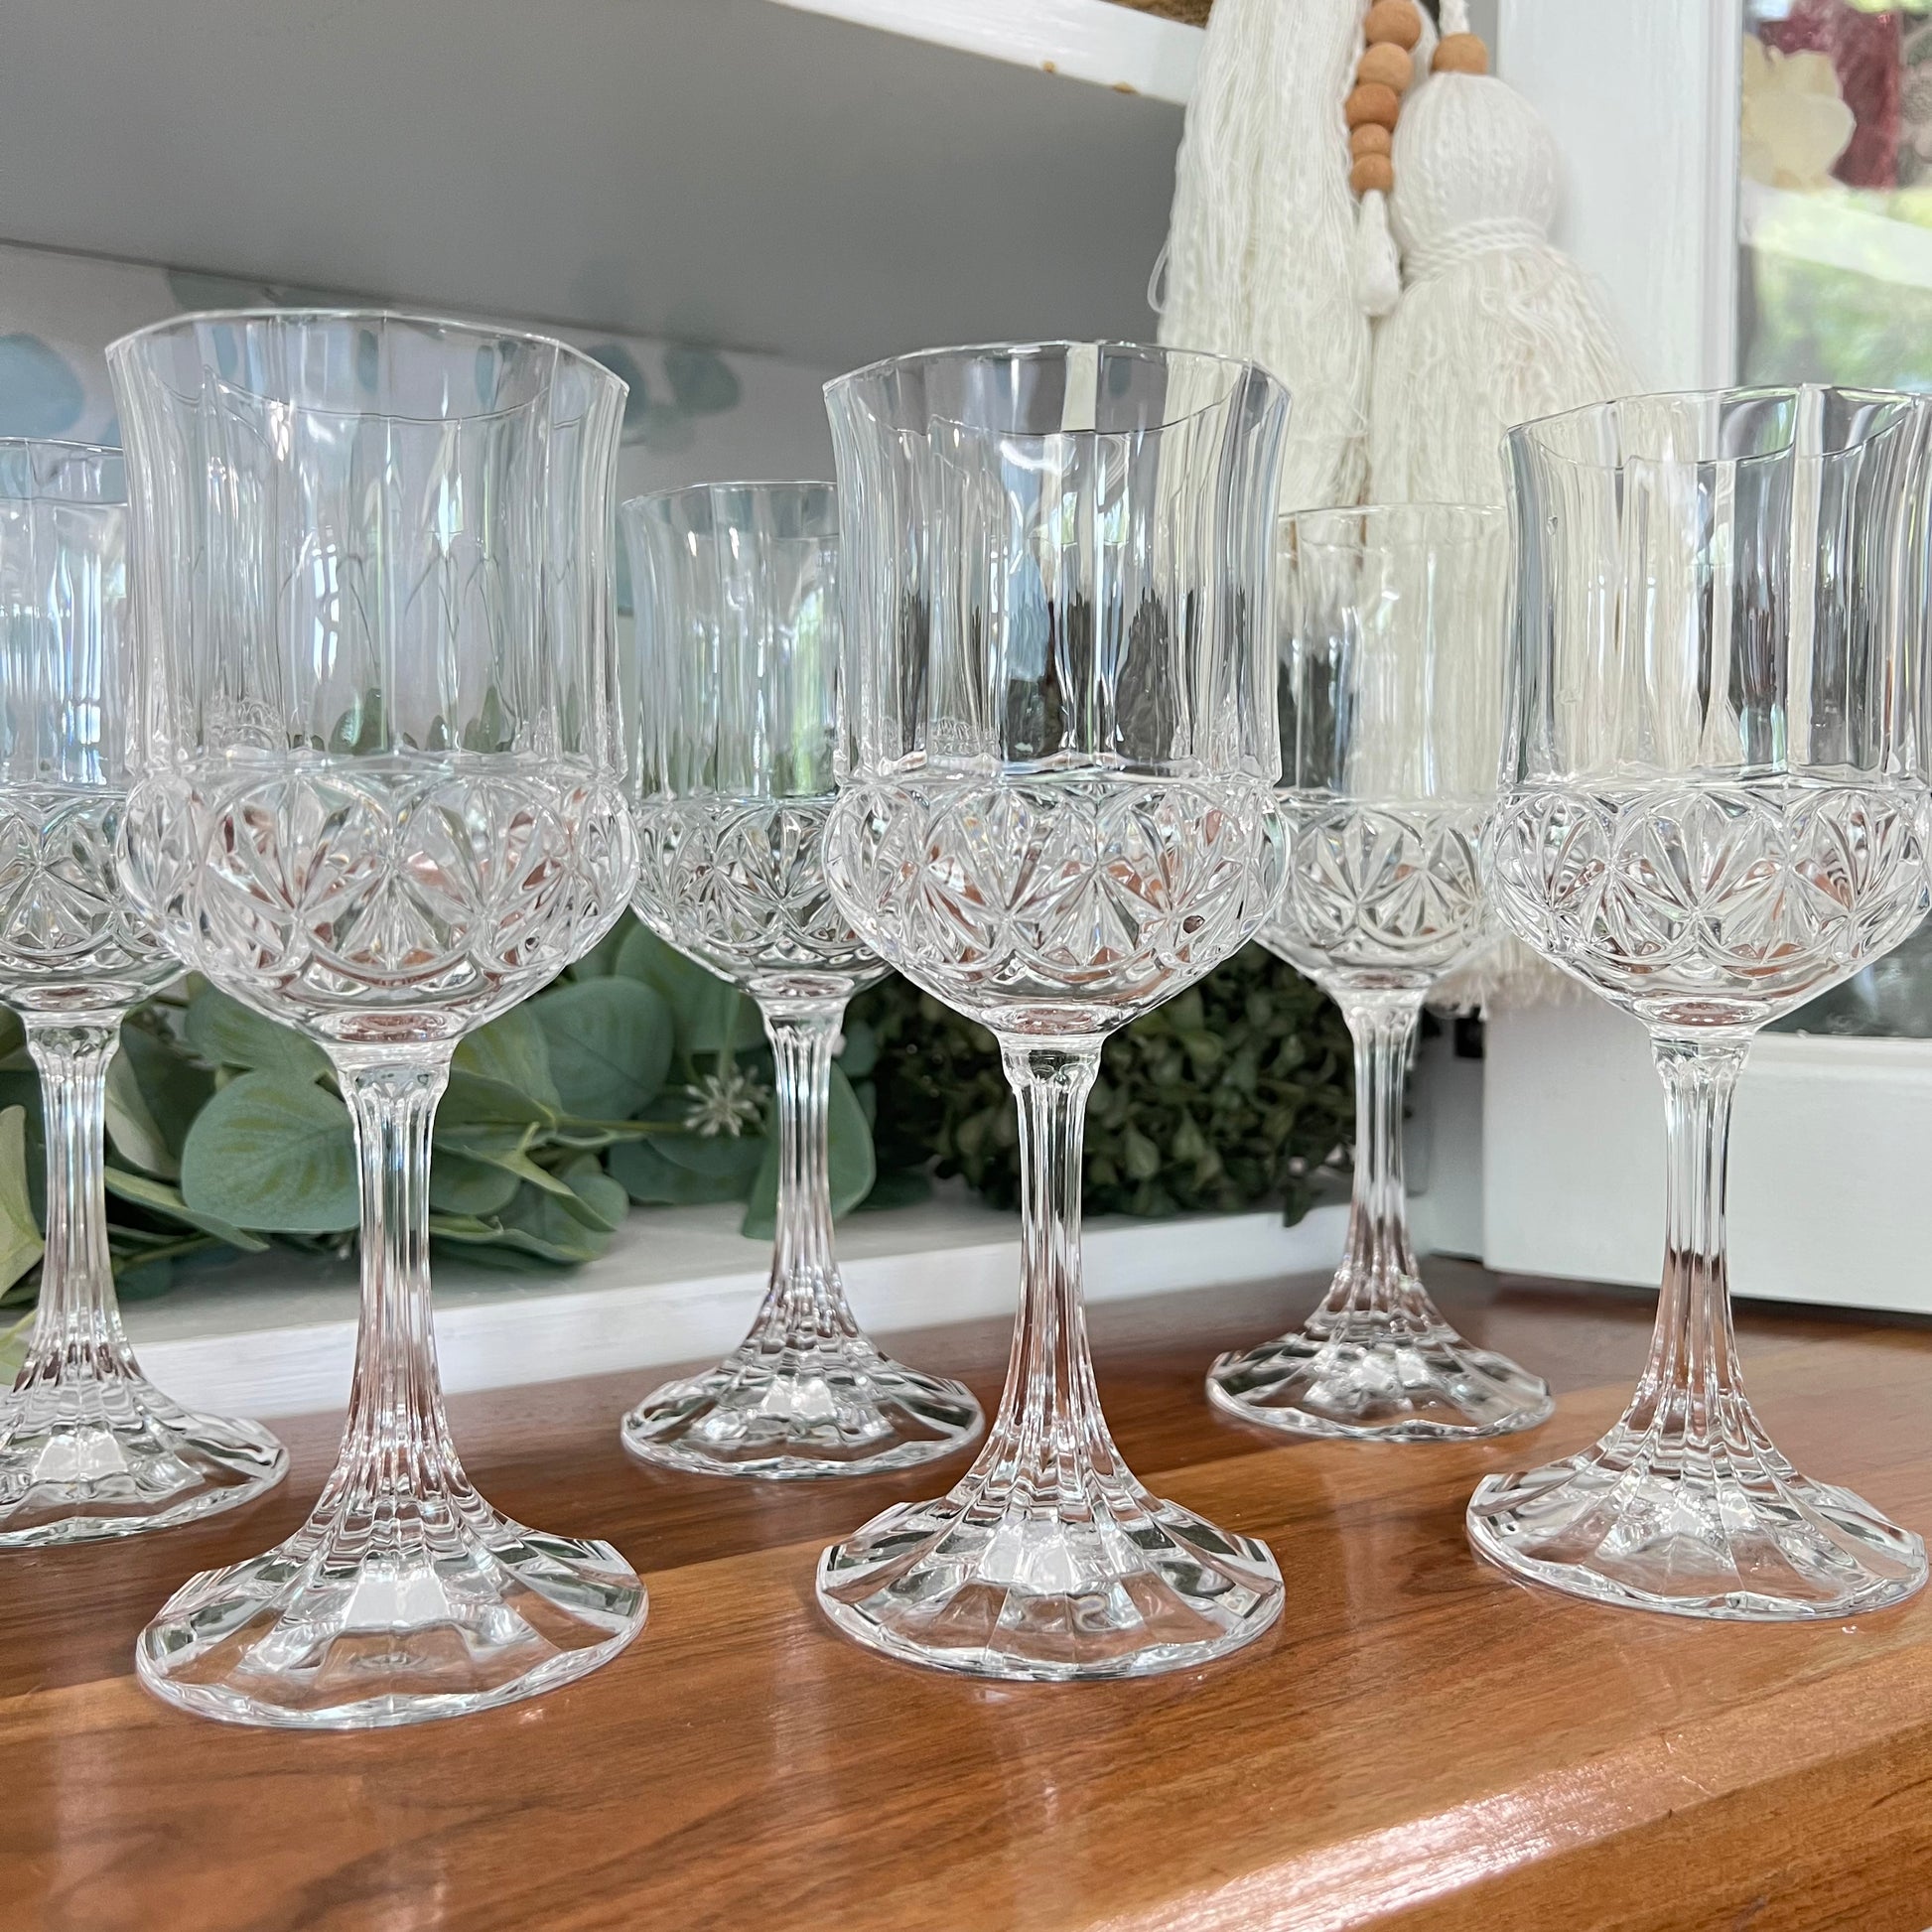 Set of 4 crystal water goblet stemware by designer Shannon Crystal